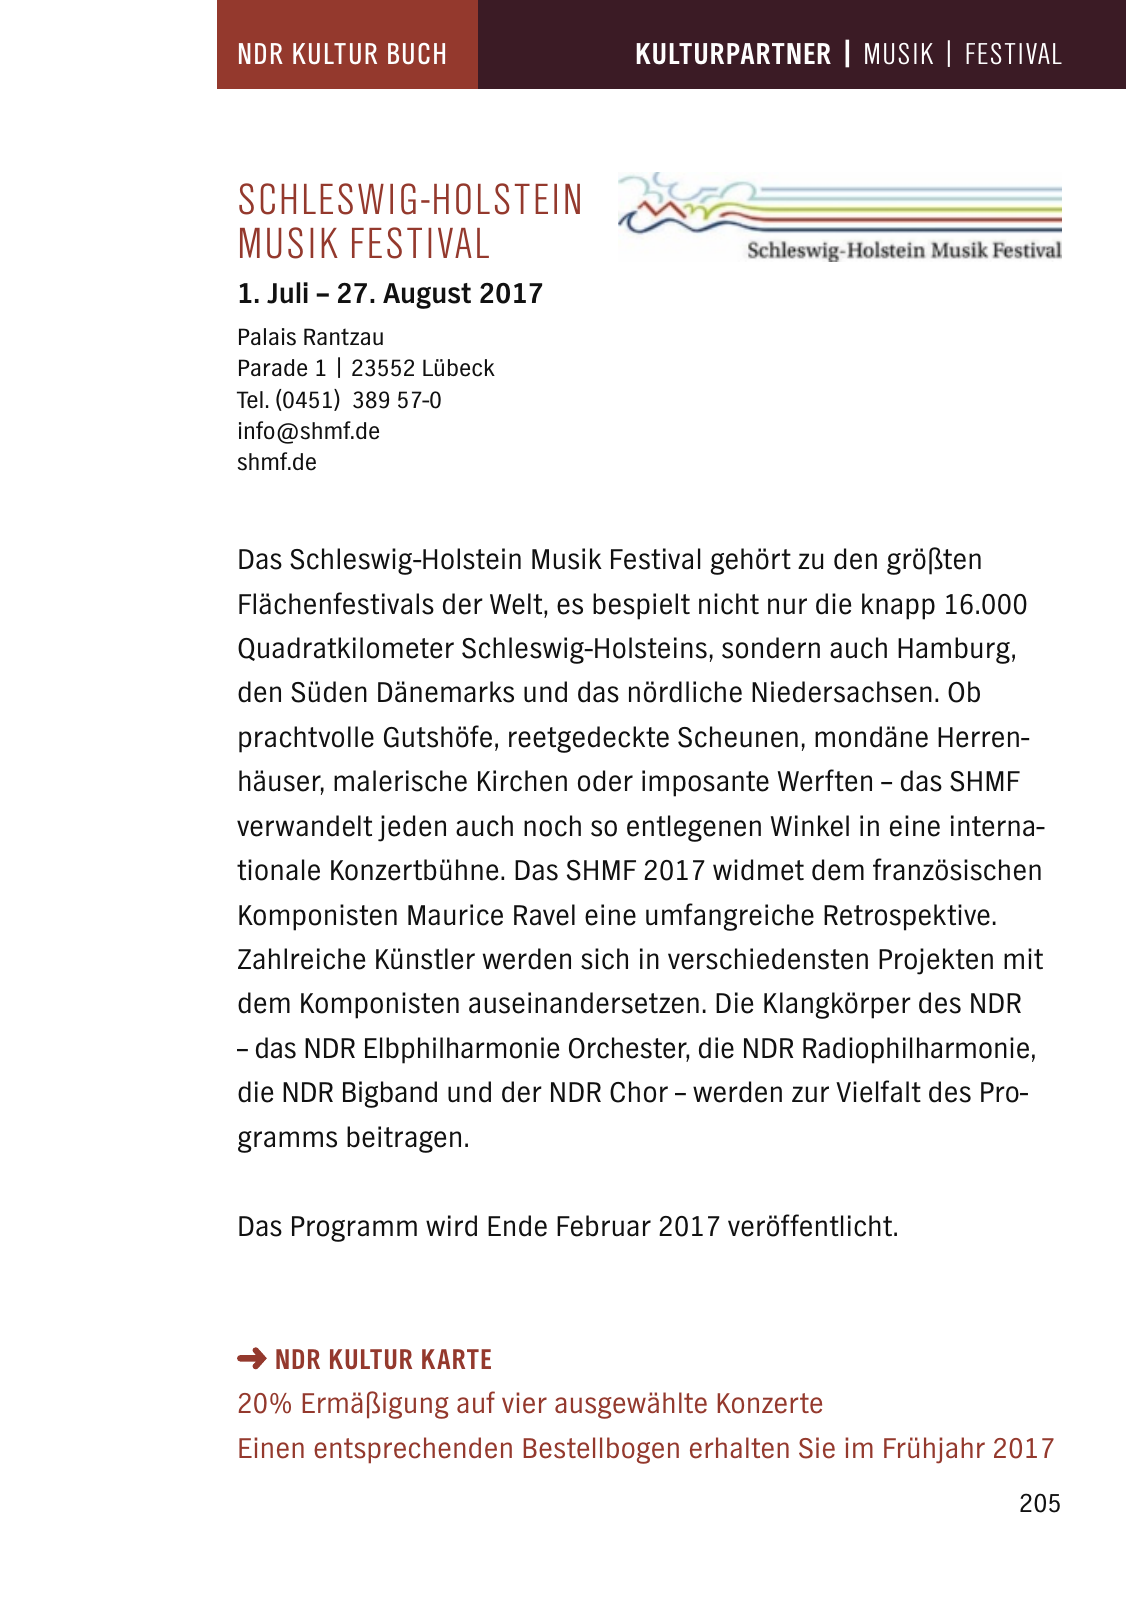 Vorschau NDR Kultur Buch 2017 Seite 207